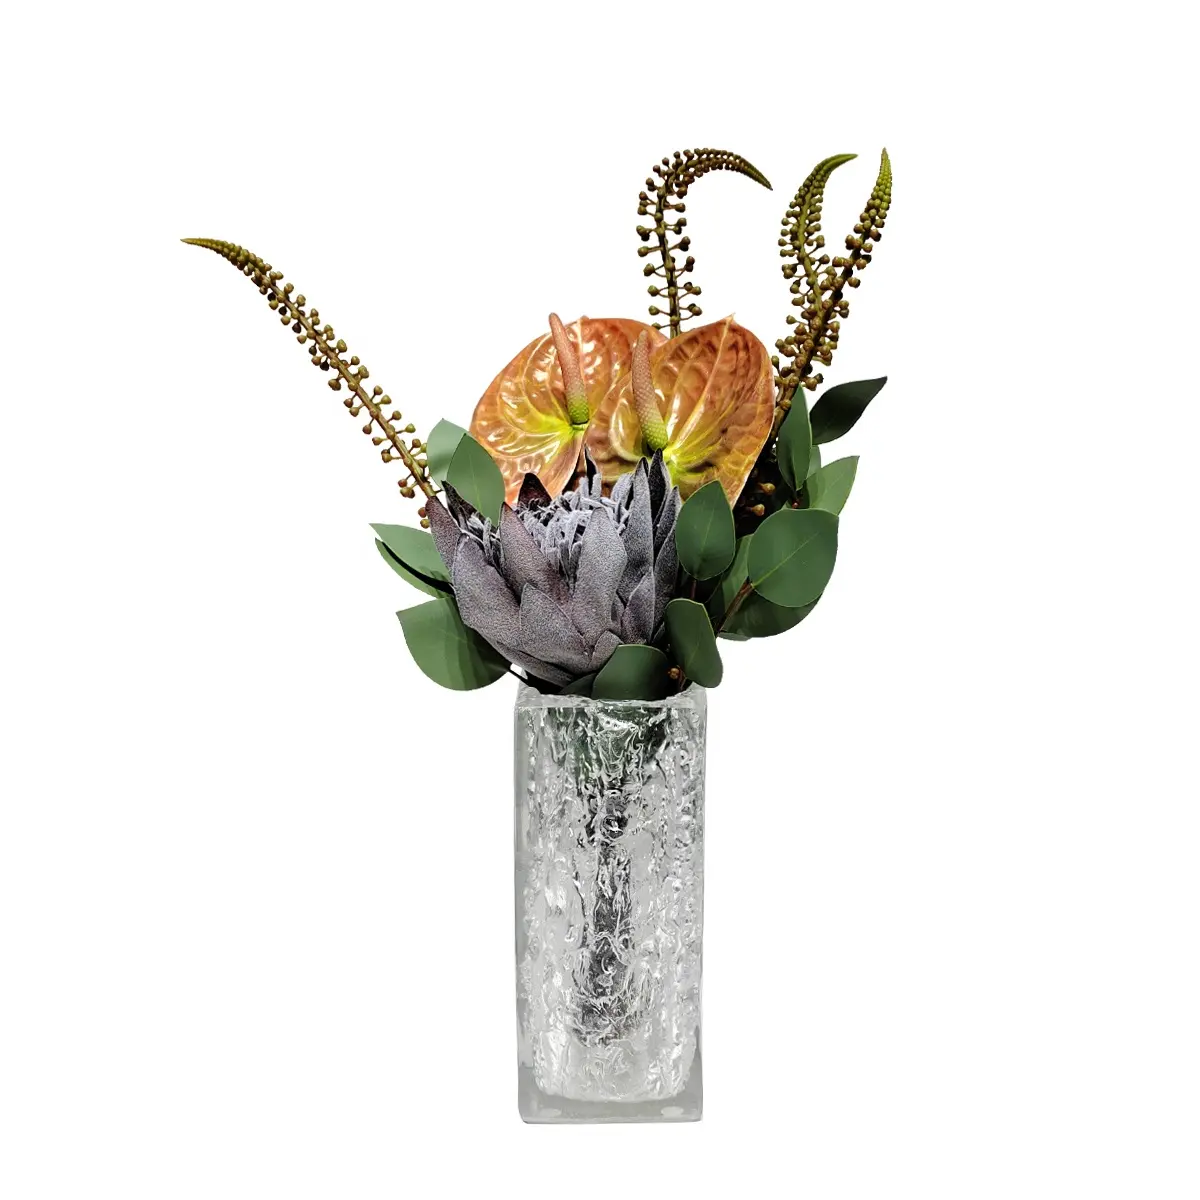 Natural Real Touch Anthurium hybridda pengaturan bunga buatan tangan hadiah ulang tahun Hari Ibu Hari Valentine